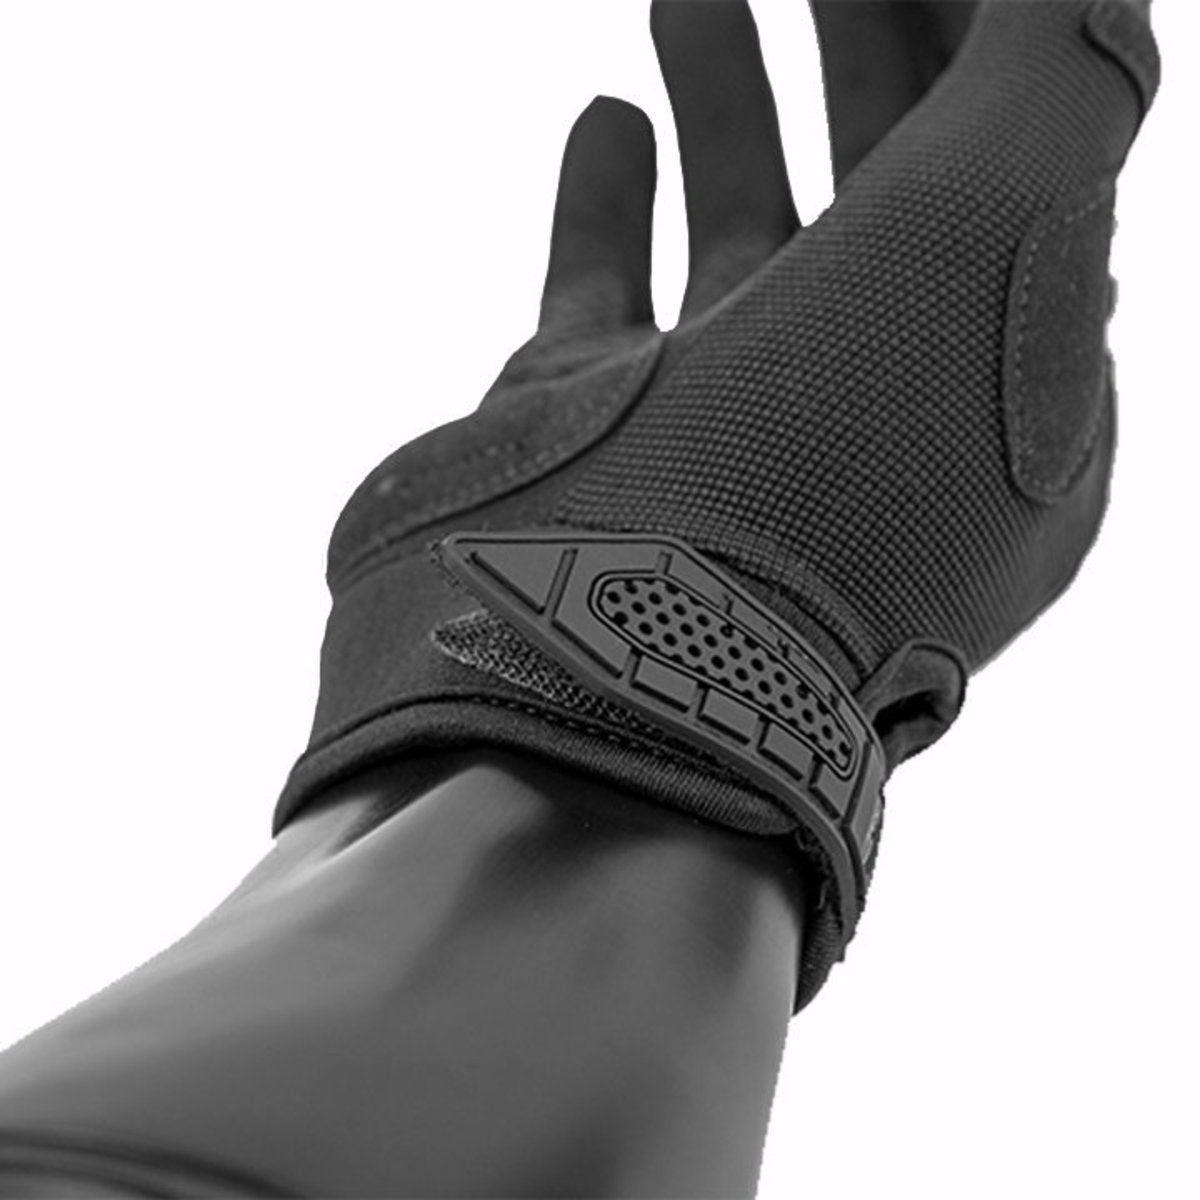 Valken Zulu Gloves | Shop Gloves